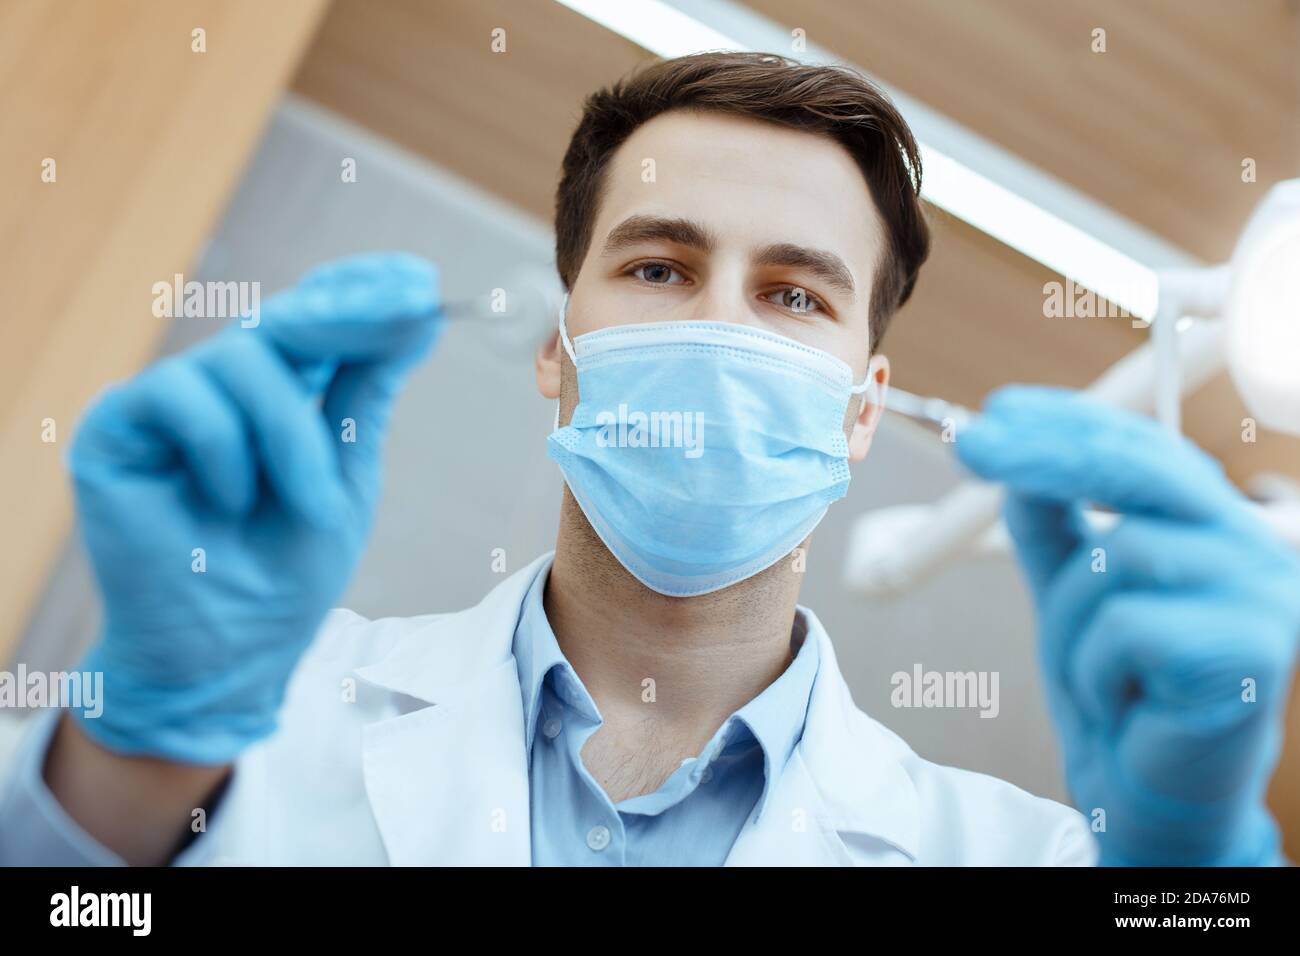 Jeune dentiste attrayant en manteau blanc, masque de protection et gants en caoutchouc traite les dents au patient Banque D'Images